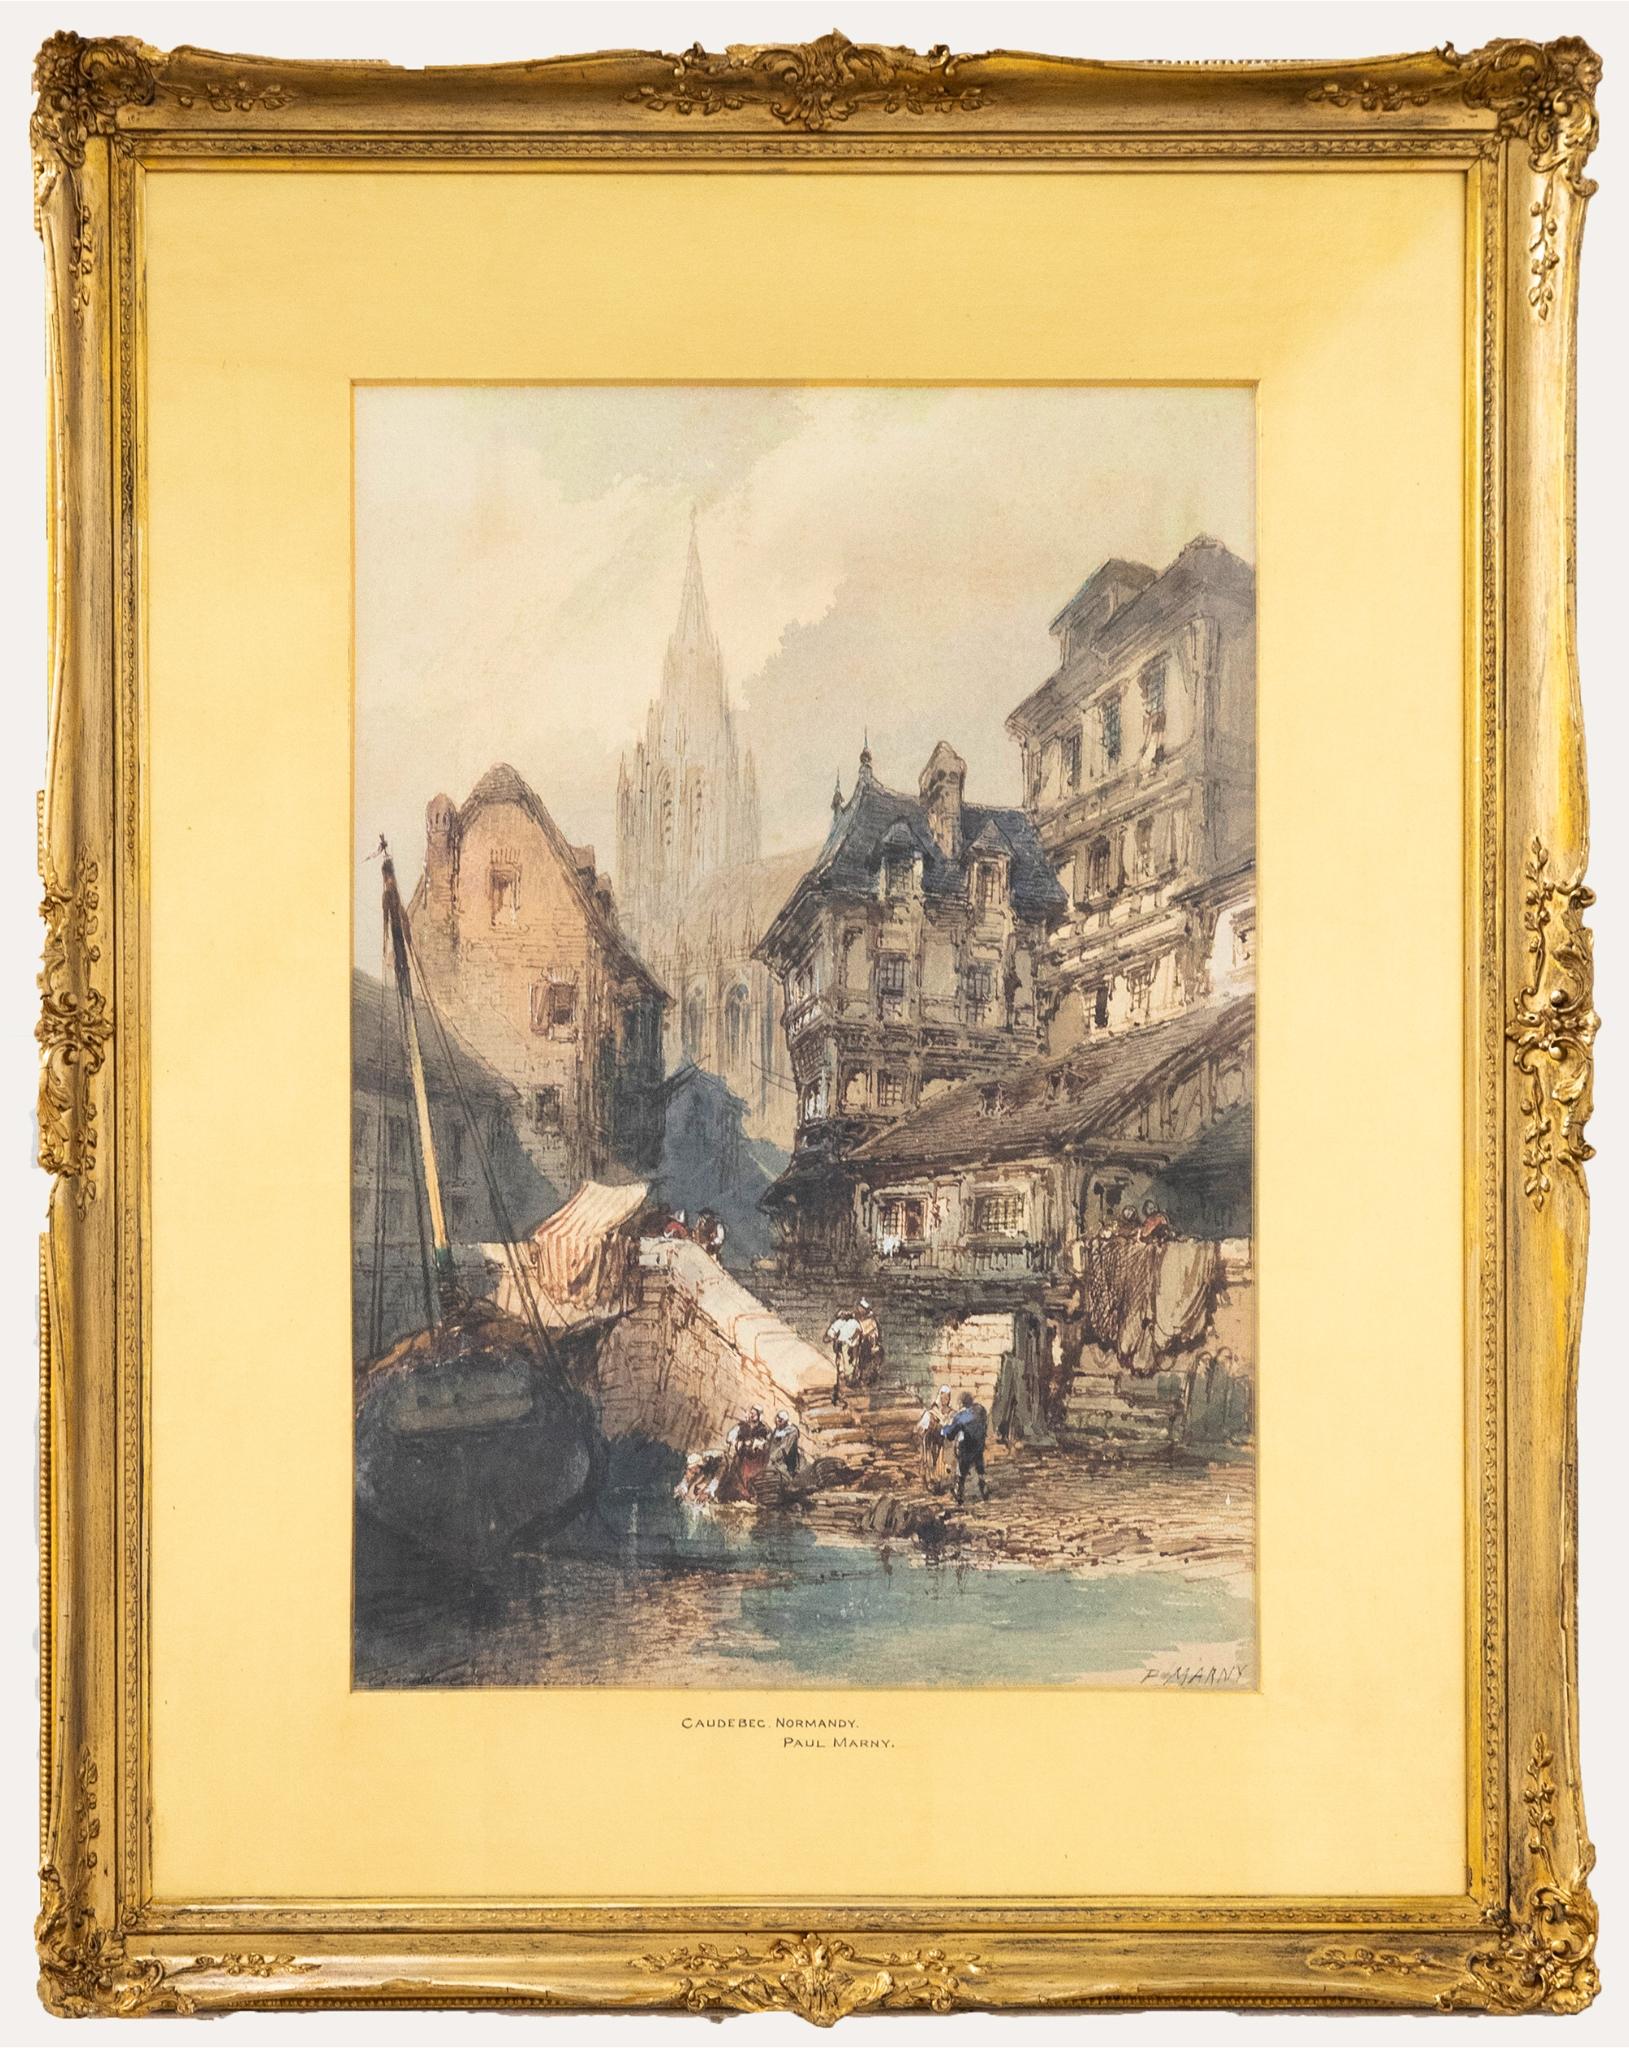 Une charmante vue de Caudebec, en Normandie, datant du 19e siècle. L'artiste a merveilleusement capturé l'architecture médiévale complexe et la nature animée de cette grande ville française. L'artiste a signé la scène en bas à droite et inscrit le